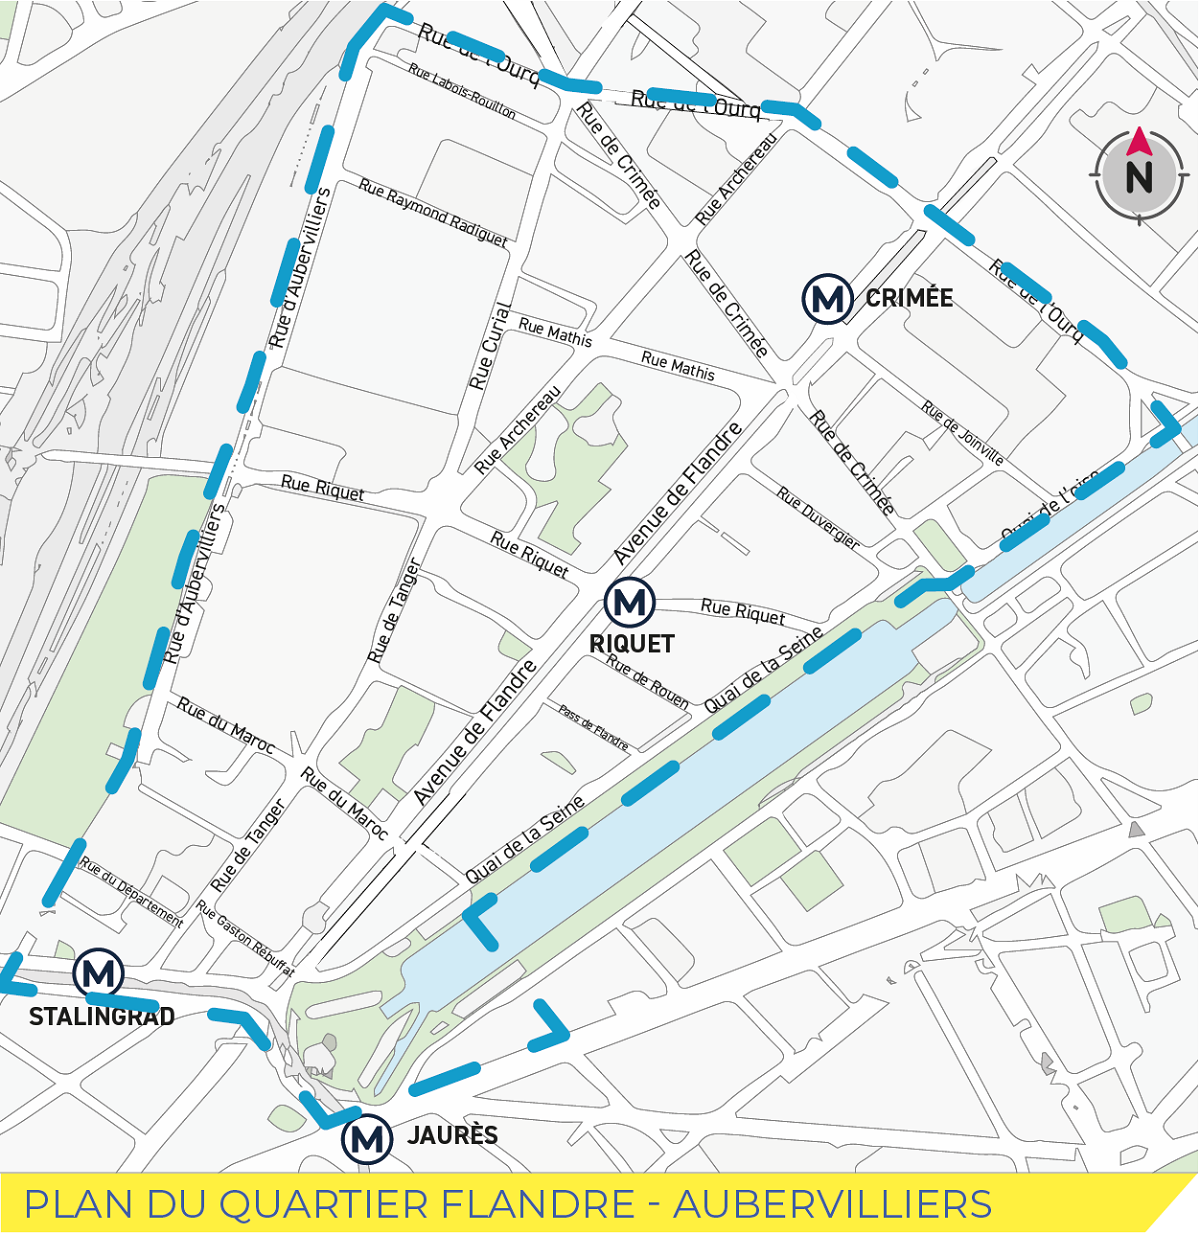 Plan du Quartier Flandre - Aubervilliers